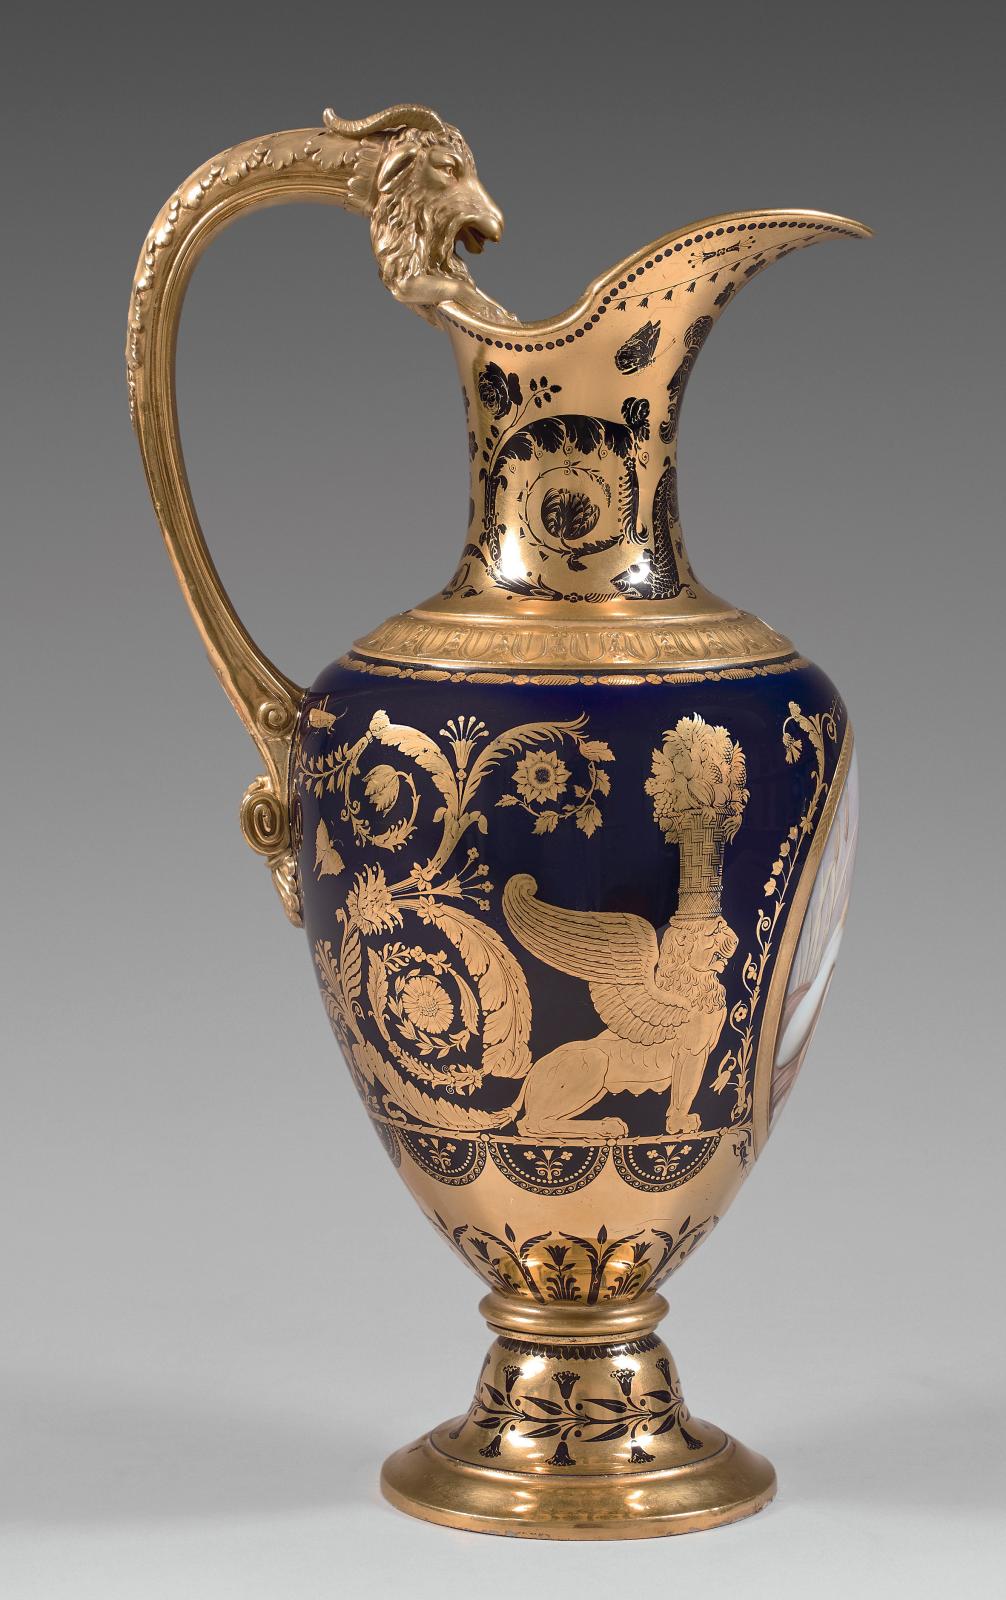 Ce grand pot à eau (h. 378 cm) et son bassin (47 x 21,5 x 8,5 cm) en porcelaine, produits par Sèvres en 1807, ont été offerts à Joachim Mu